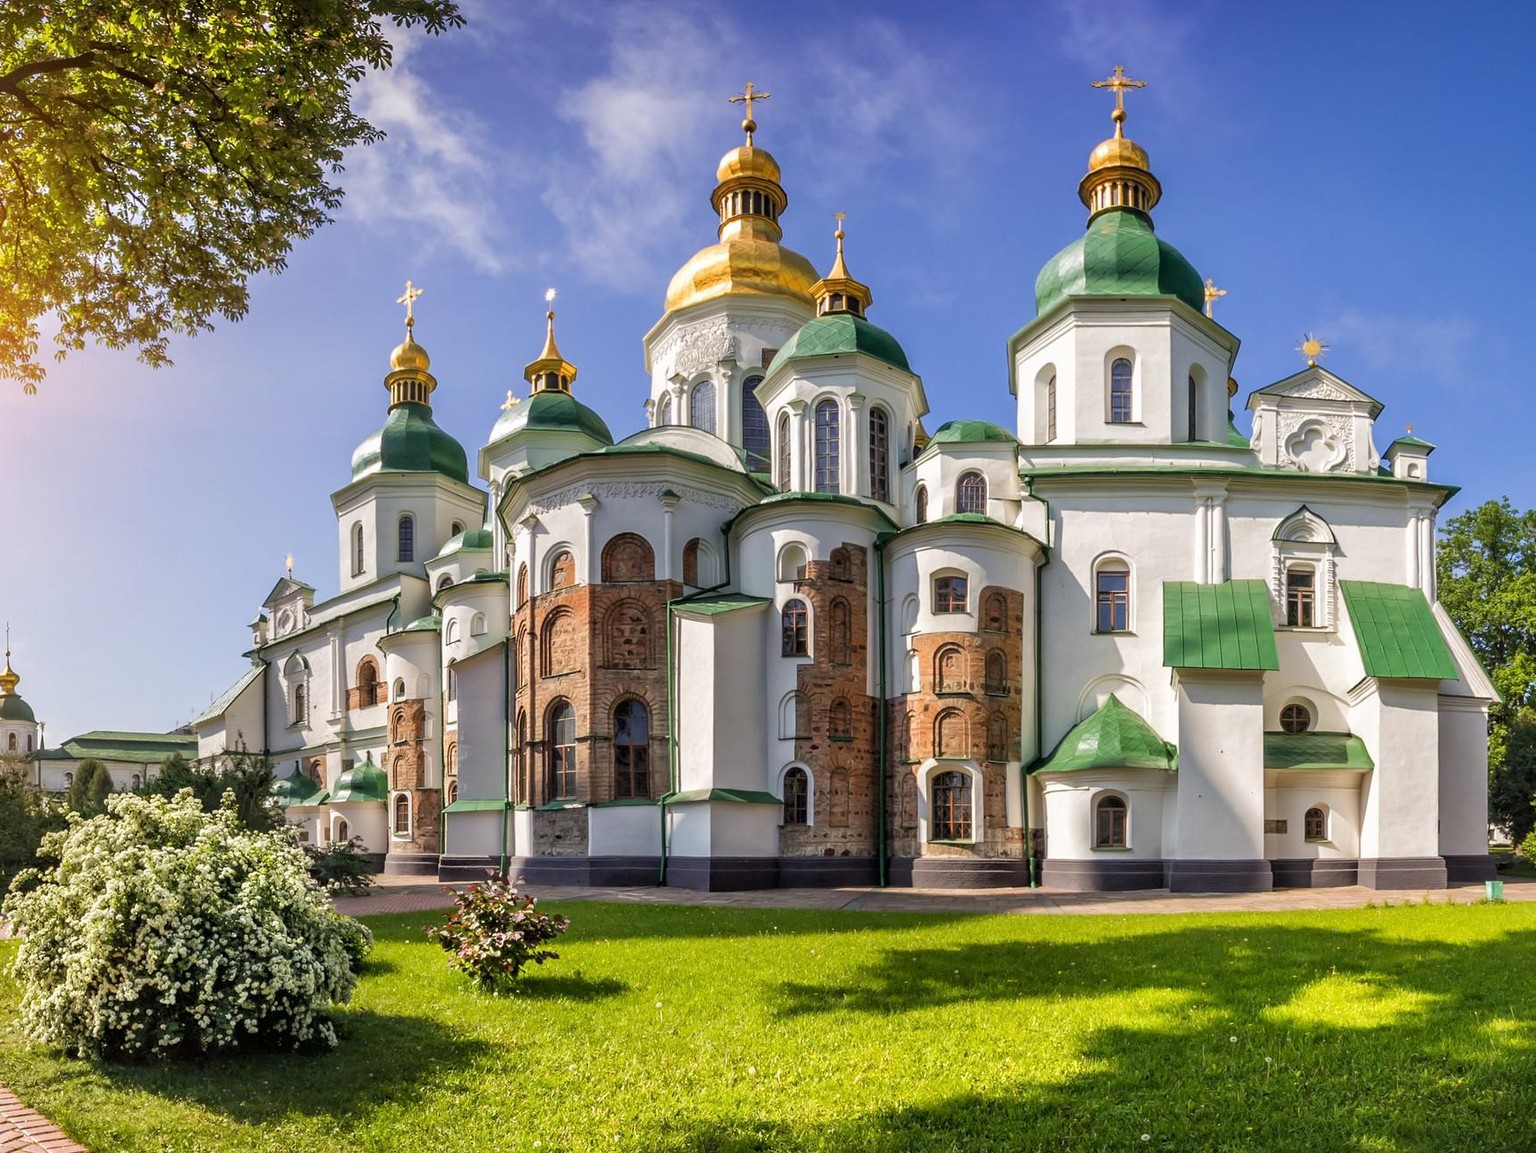 La cathédrale Sainte-Sophie, le monastère troglodyte de Lavra Petchersk et l'église du Rédempteur de Berestovoin (tous situés à Kiev) font partie des monuments les plus remarquables de la culture chrétienne européenne. Ils constituent l'un des sept sites du patrimoine mondial de l'UNESCO en Ukraine. Sur la photo: la cathédrale Sainte-Sophie à Kiev. 